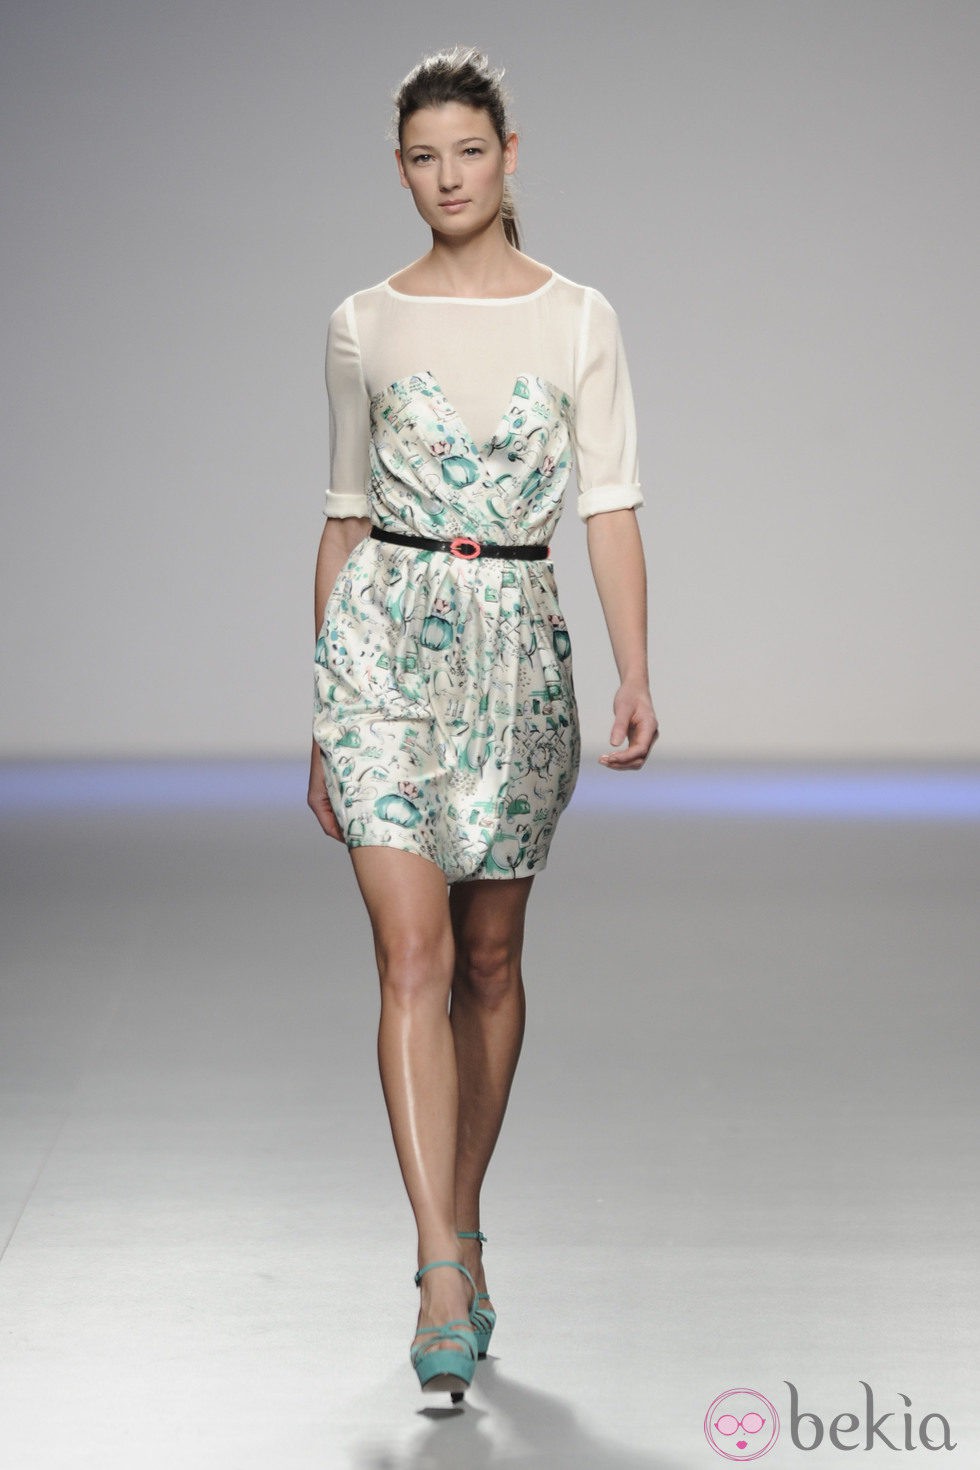 Vestido corto estampado de la colección primavera-verano 2013 de Kina Fernández